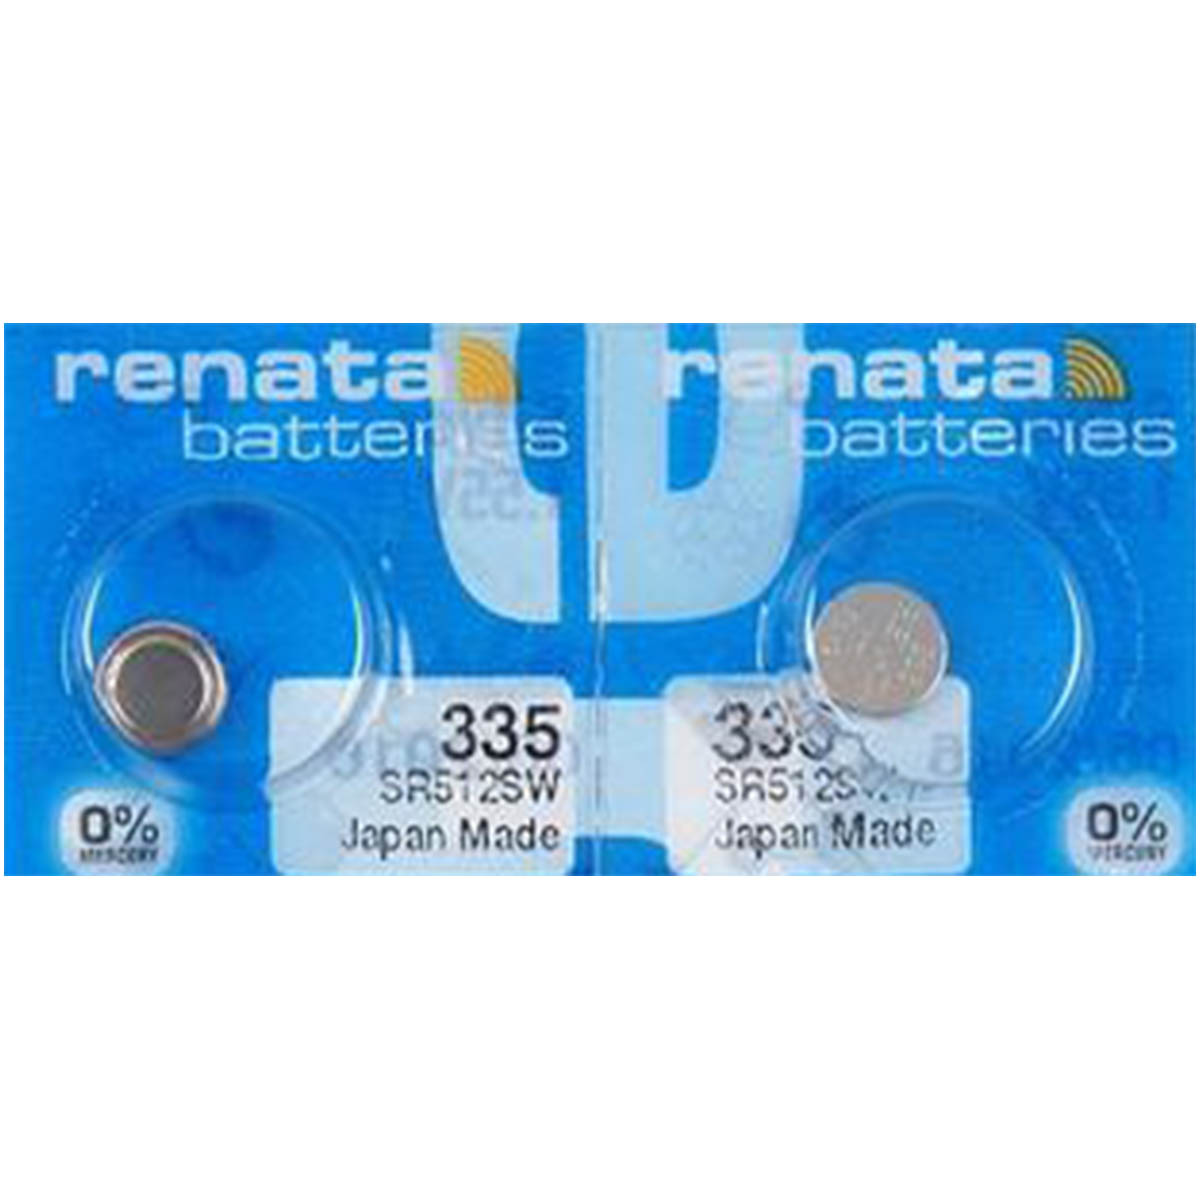 Renata 335 Battery (SR512SW) Silver Oxide 1.55V (1PC)